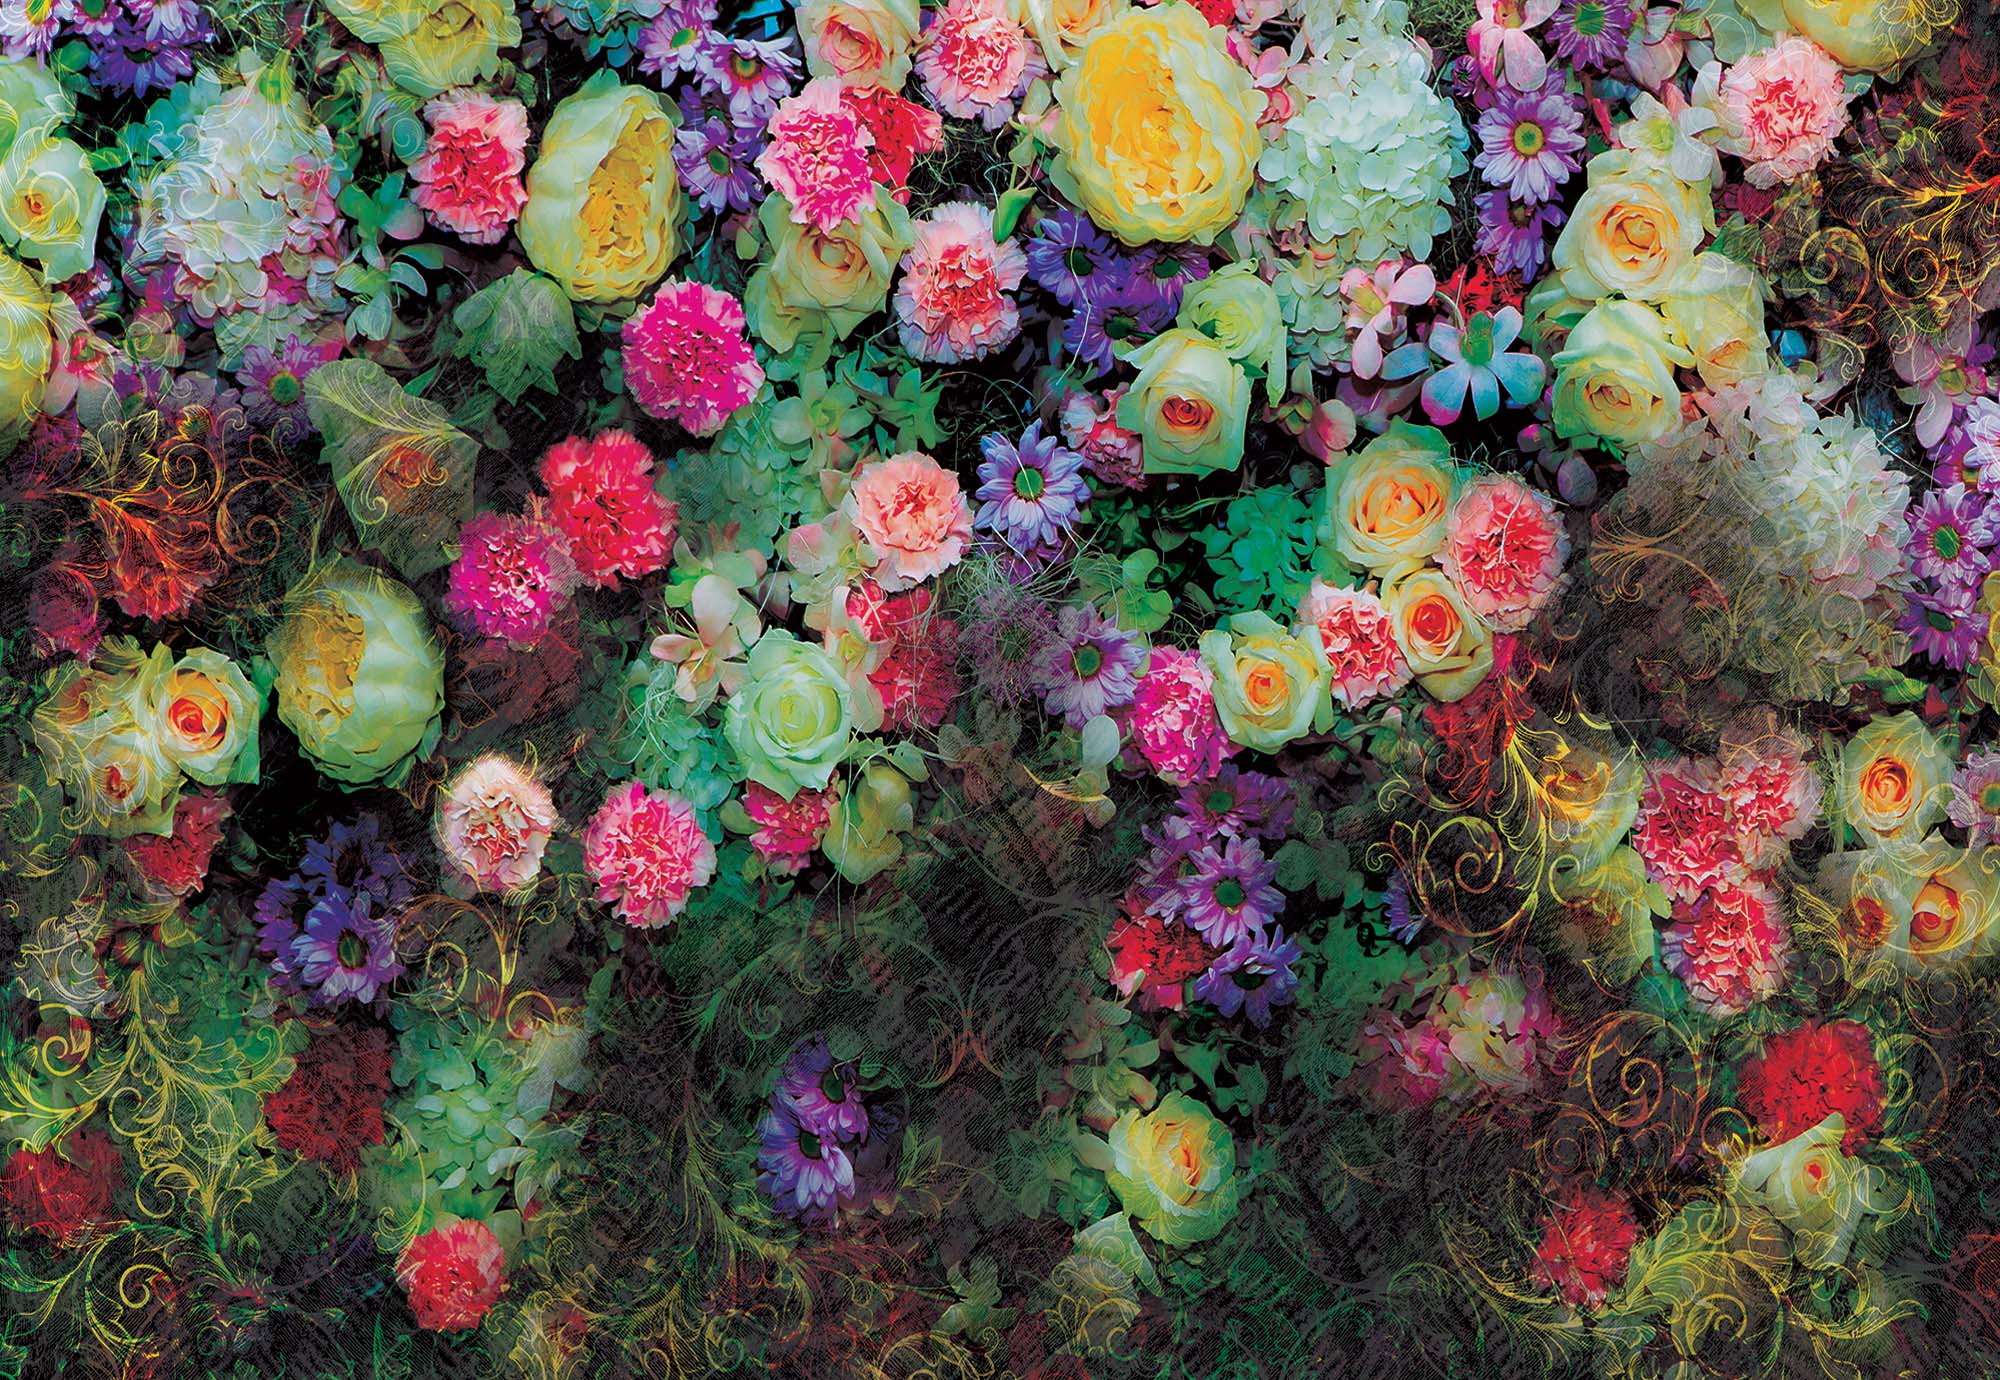 Fali poszter színes virág mintával romantikus hangulatban 368x254 vlies